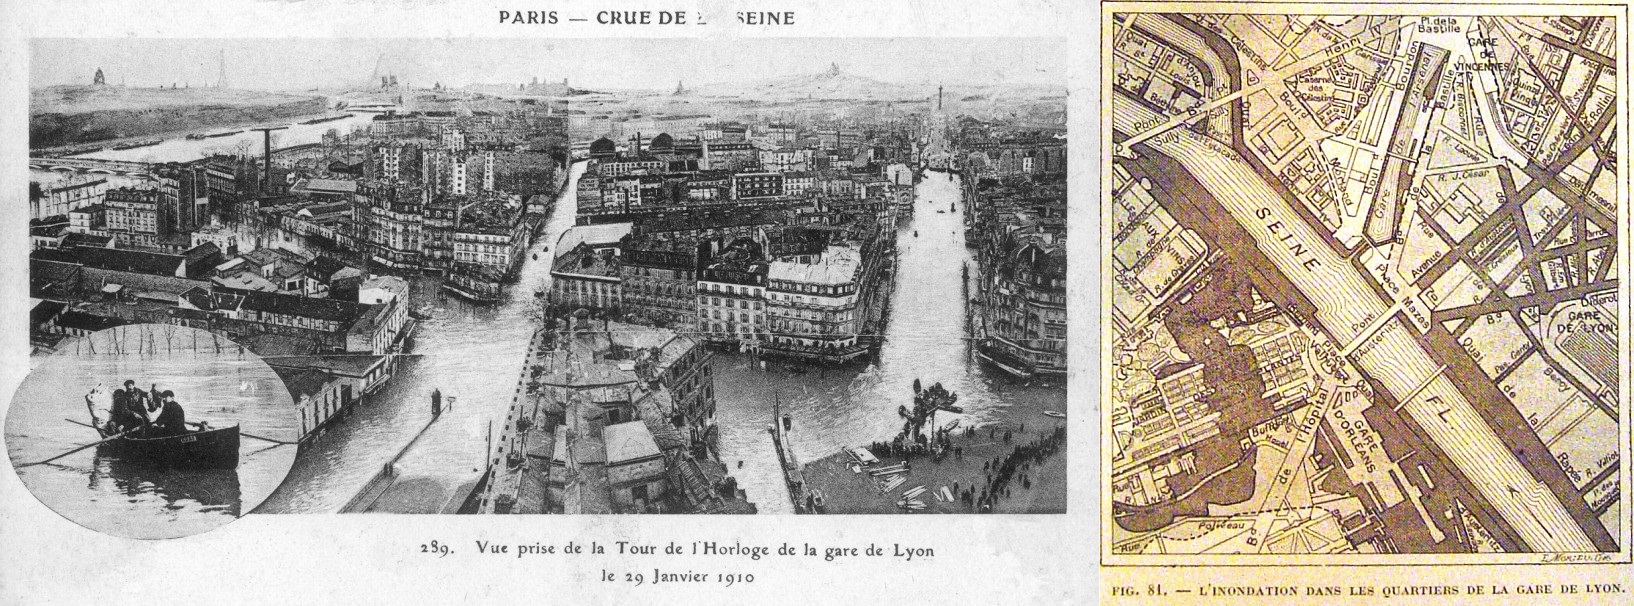 Inondation dans le secteur de la Gare de Lyon à Paris : a) Vue depuis la Tour de l’horloge (12) ; b) Plan du périmètre inondé 